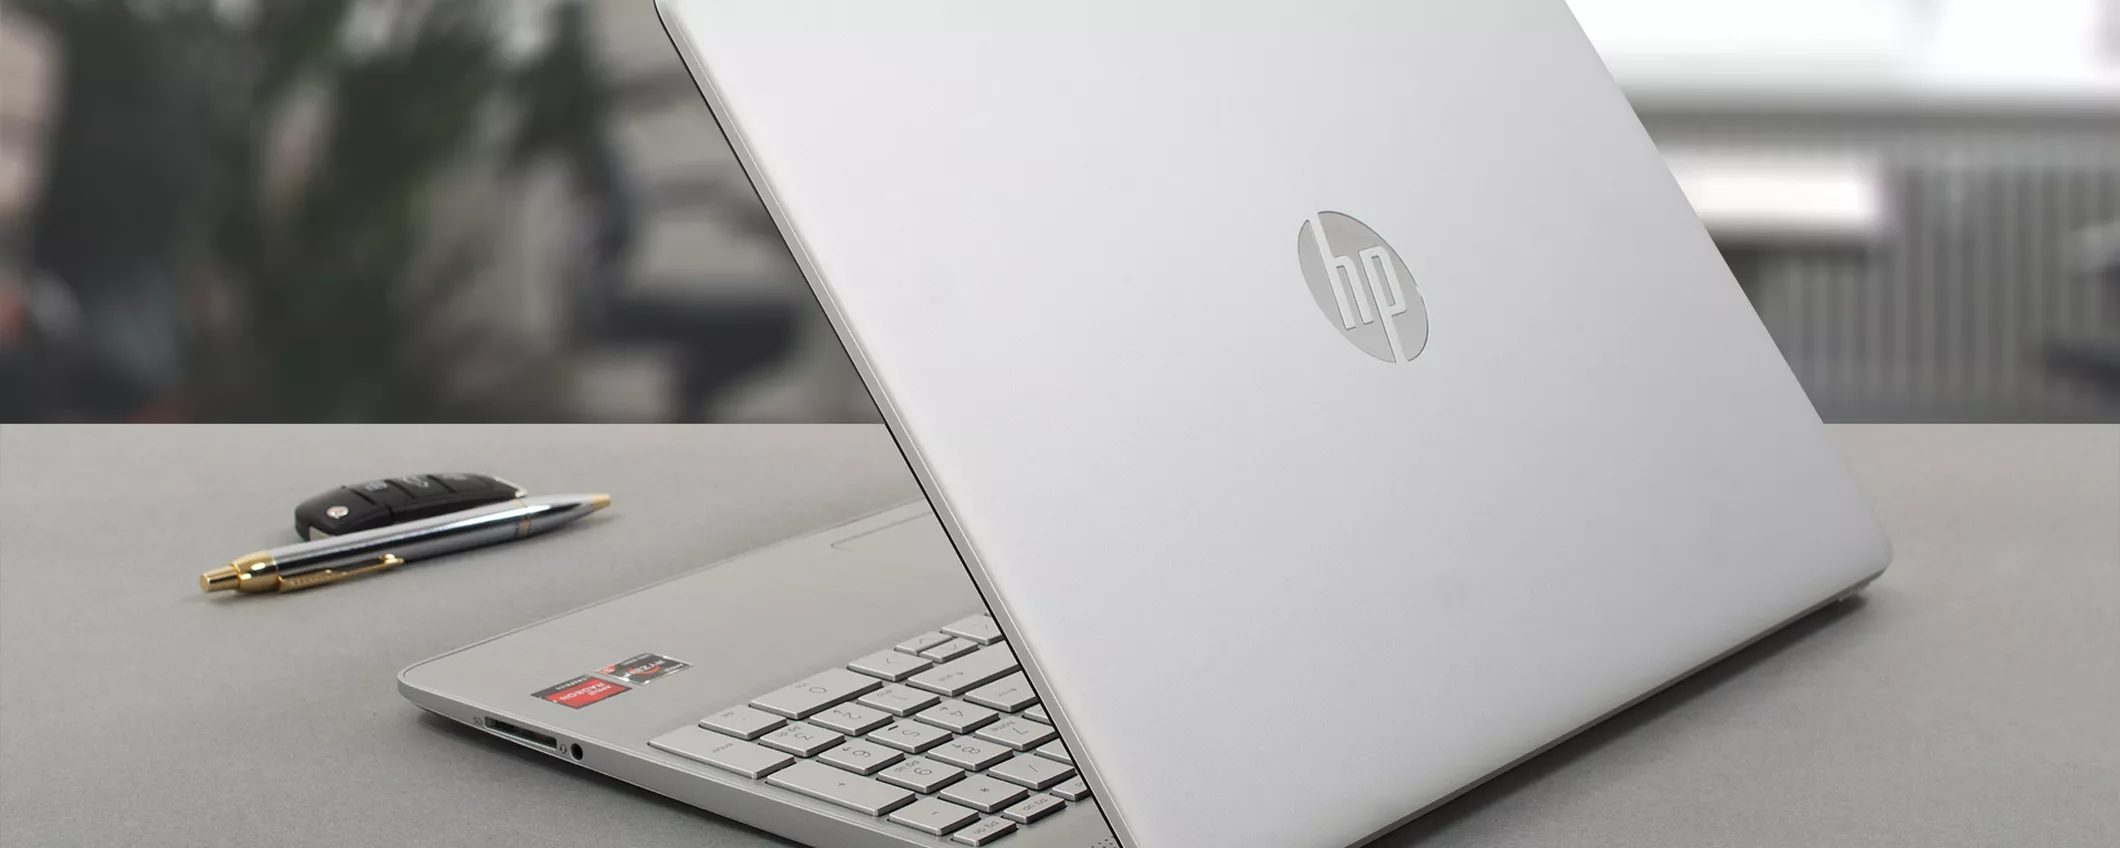 Il Notebook HP più RICERCATO del momento in OFFERTA SPECIALE su Amazon